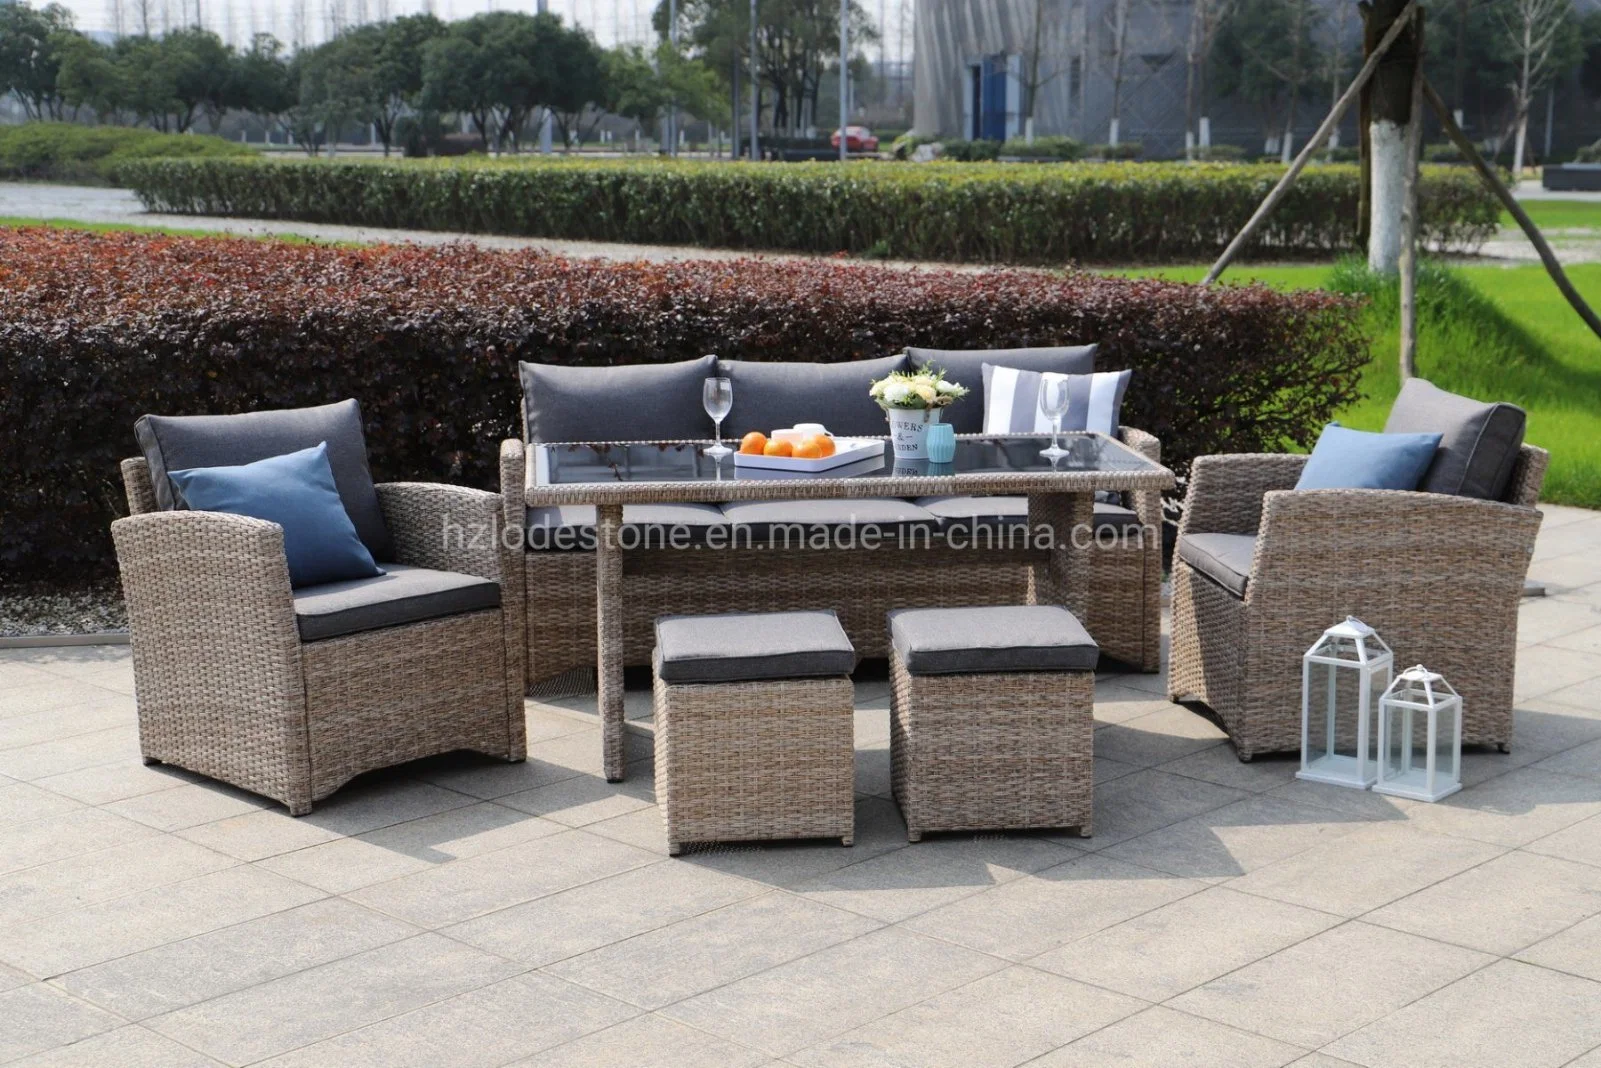 Comercio al por mayor precio de fábrica moderna silla de jardín patio Muebles exteriores muebles de rattan sofá de Ocio